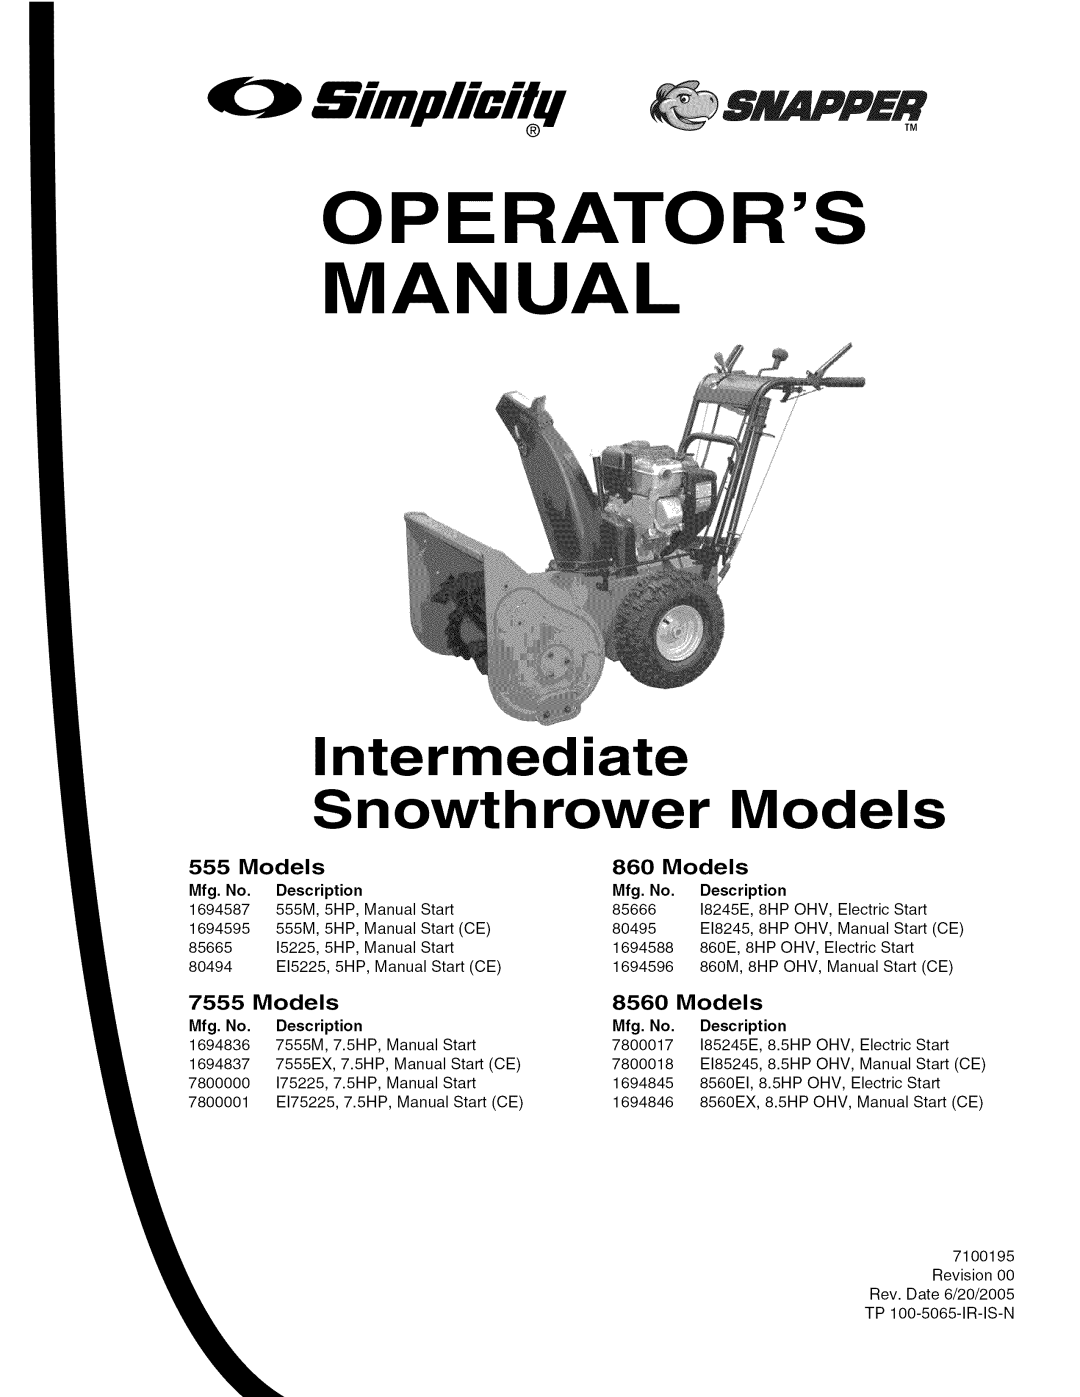 Snapper 8560, 7555 manual Intermediate, Snowthrower, Models, Operators, MANUAl, Bimplicilq SNAPPER, Mfg. No, Description 